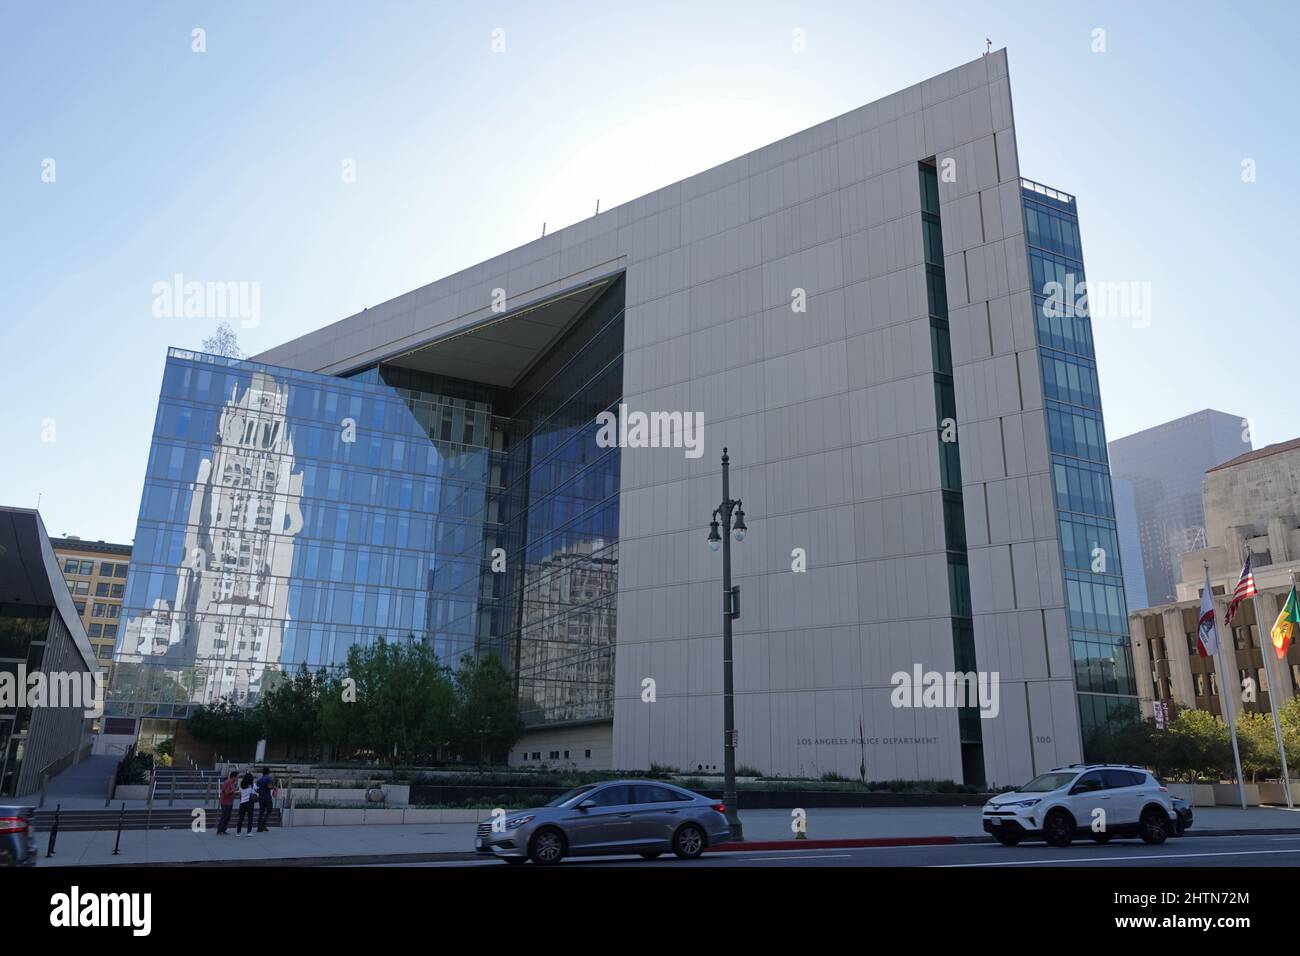 Los Angeles, CA / Etats-Unis - 23 septembre 2018: La L.A. Le siège social du service de police est affiché au centre-ville, avec l'édifice de l'hôtel de ville qui se reflète. Banque D'Images